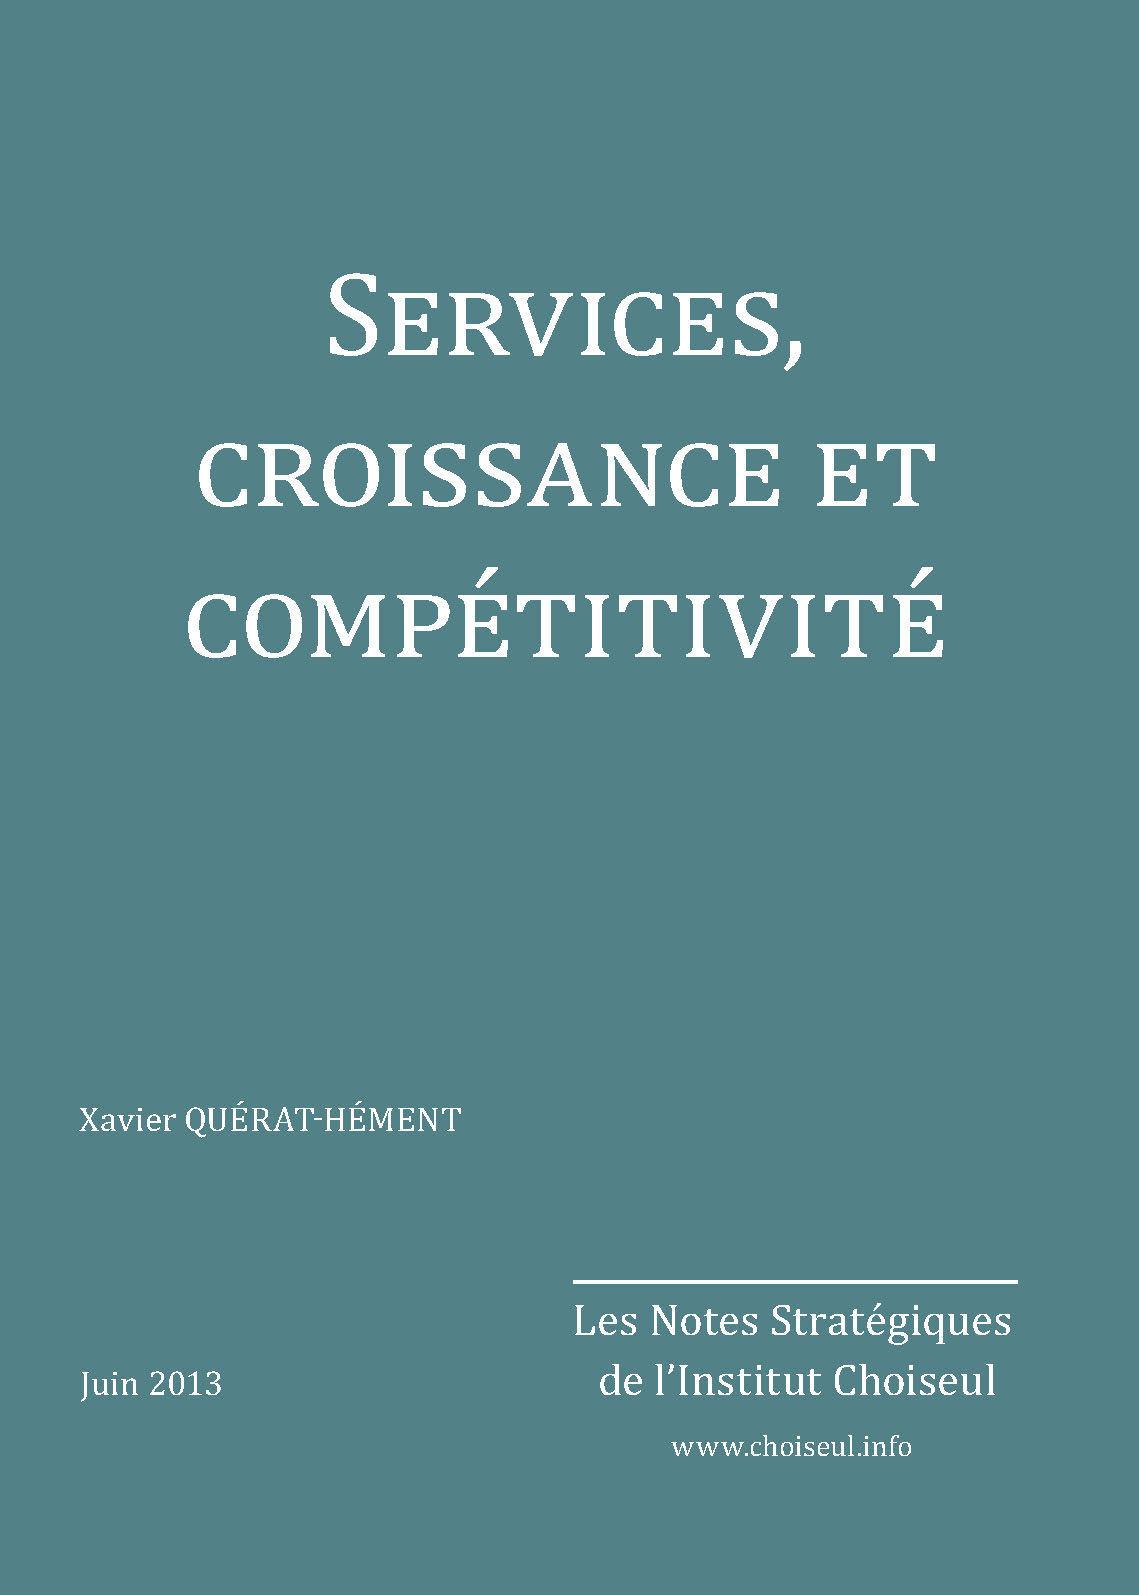 Services, croissance et compétitivité